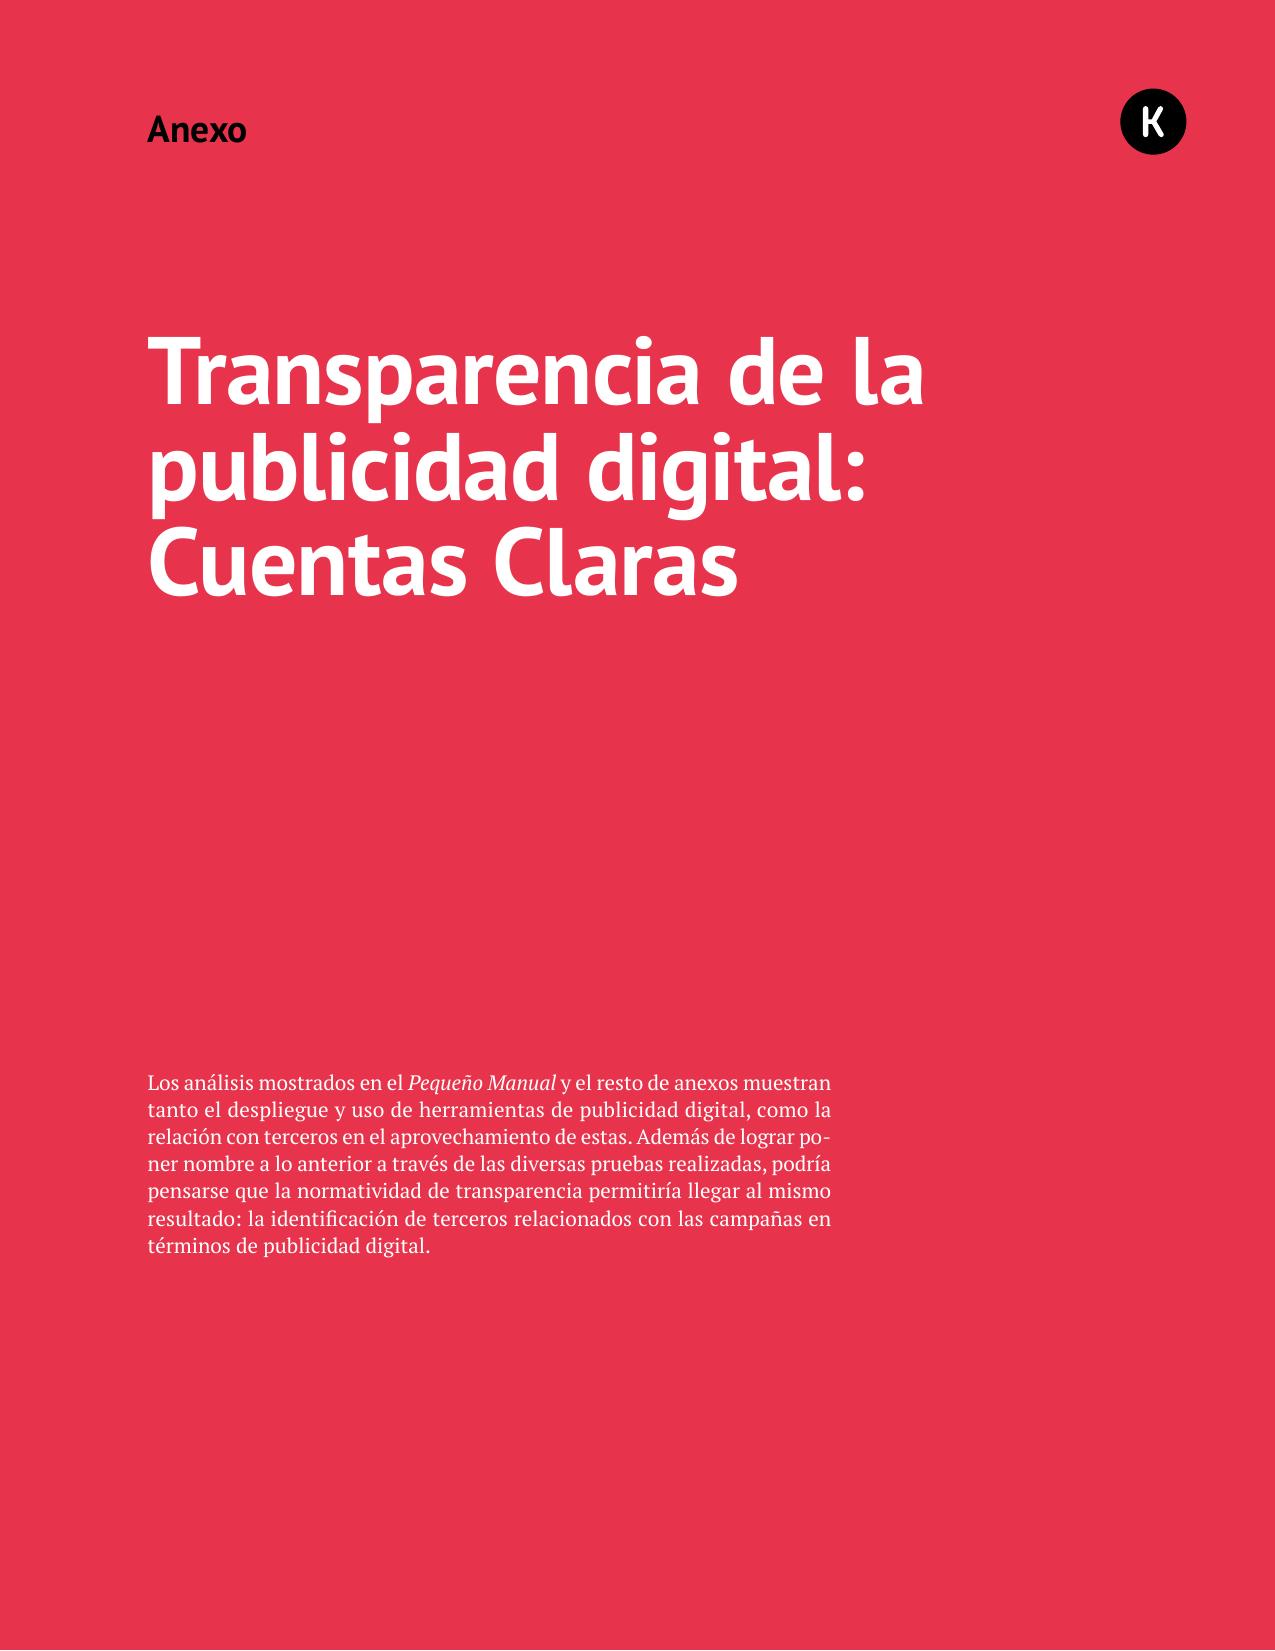 Anexo 10 - Transparencia de la publicidad digital Cuentas Claras